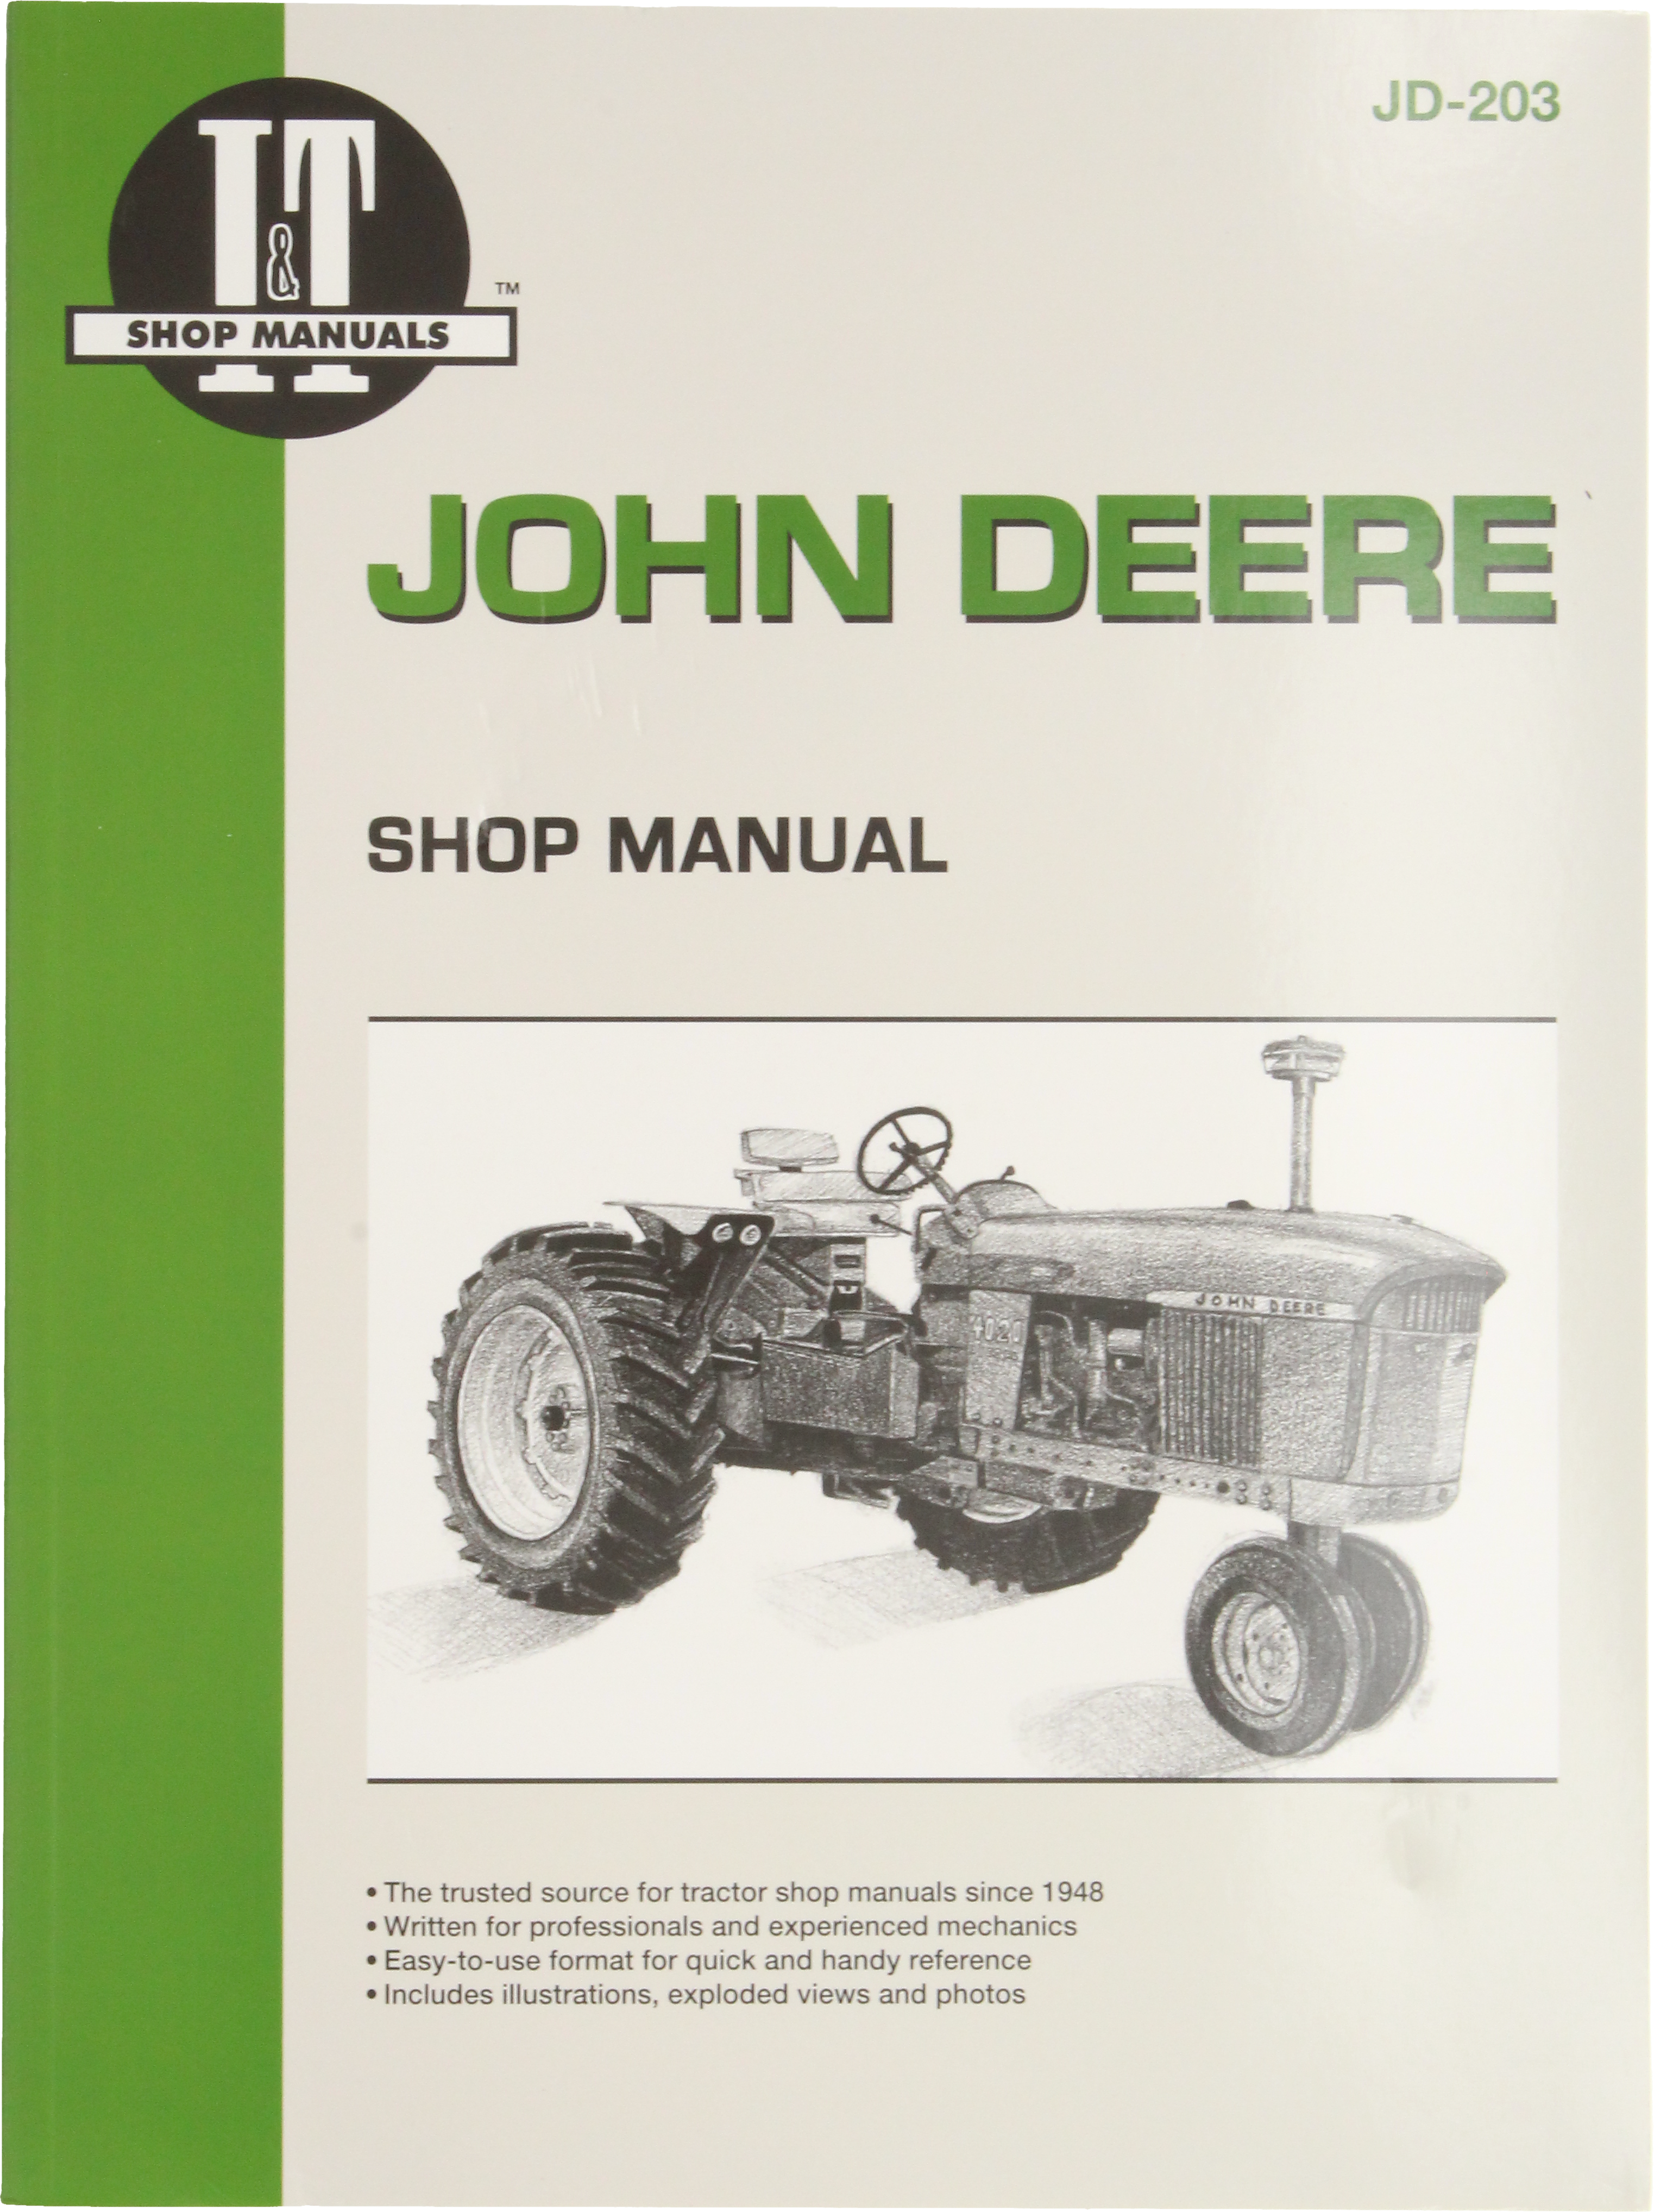 Parts Manual Fits John Deere Tractor 4020